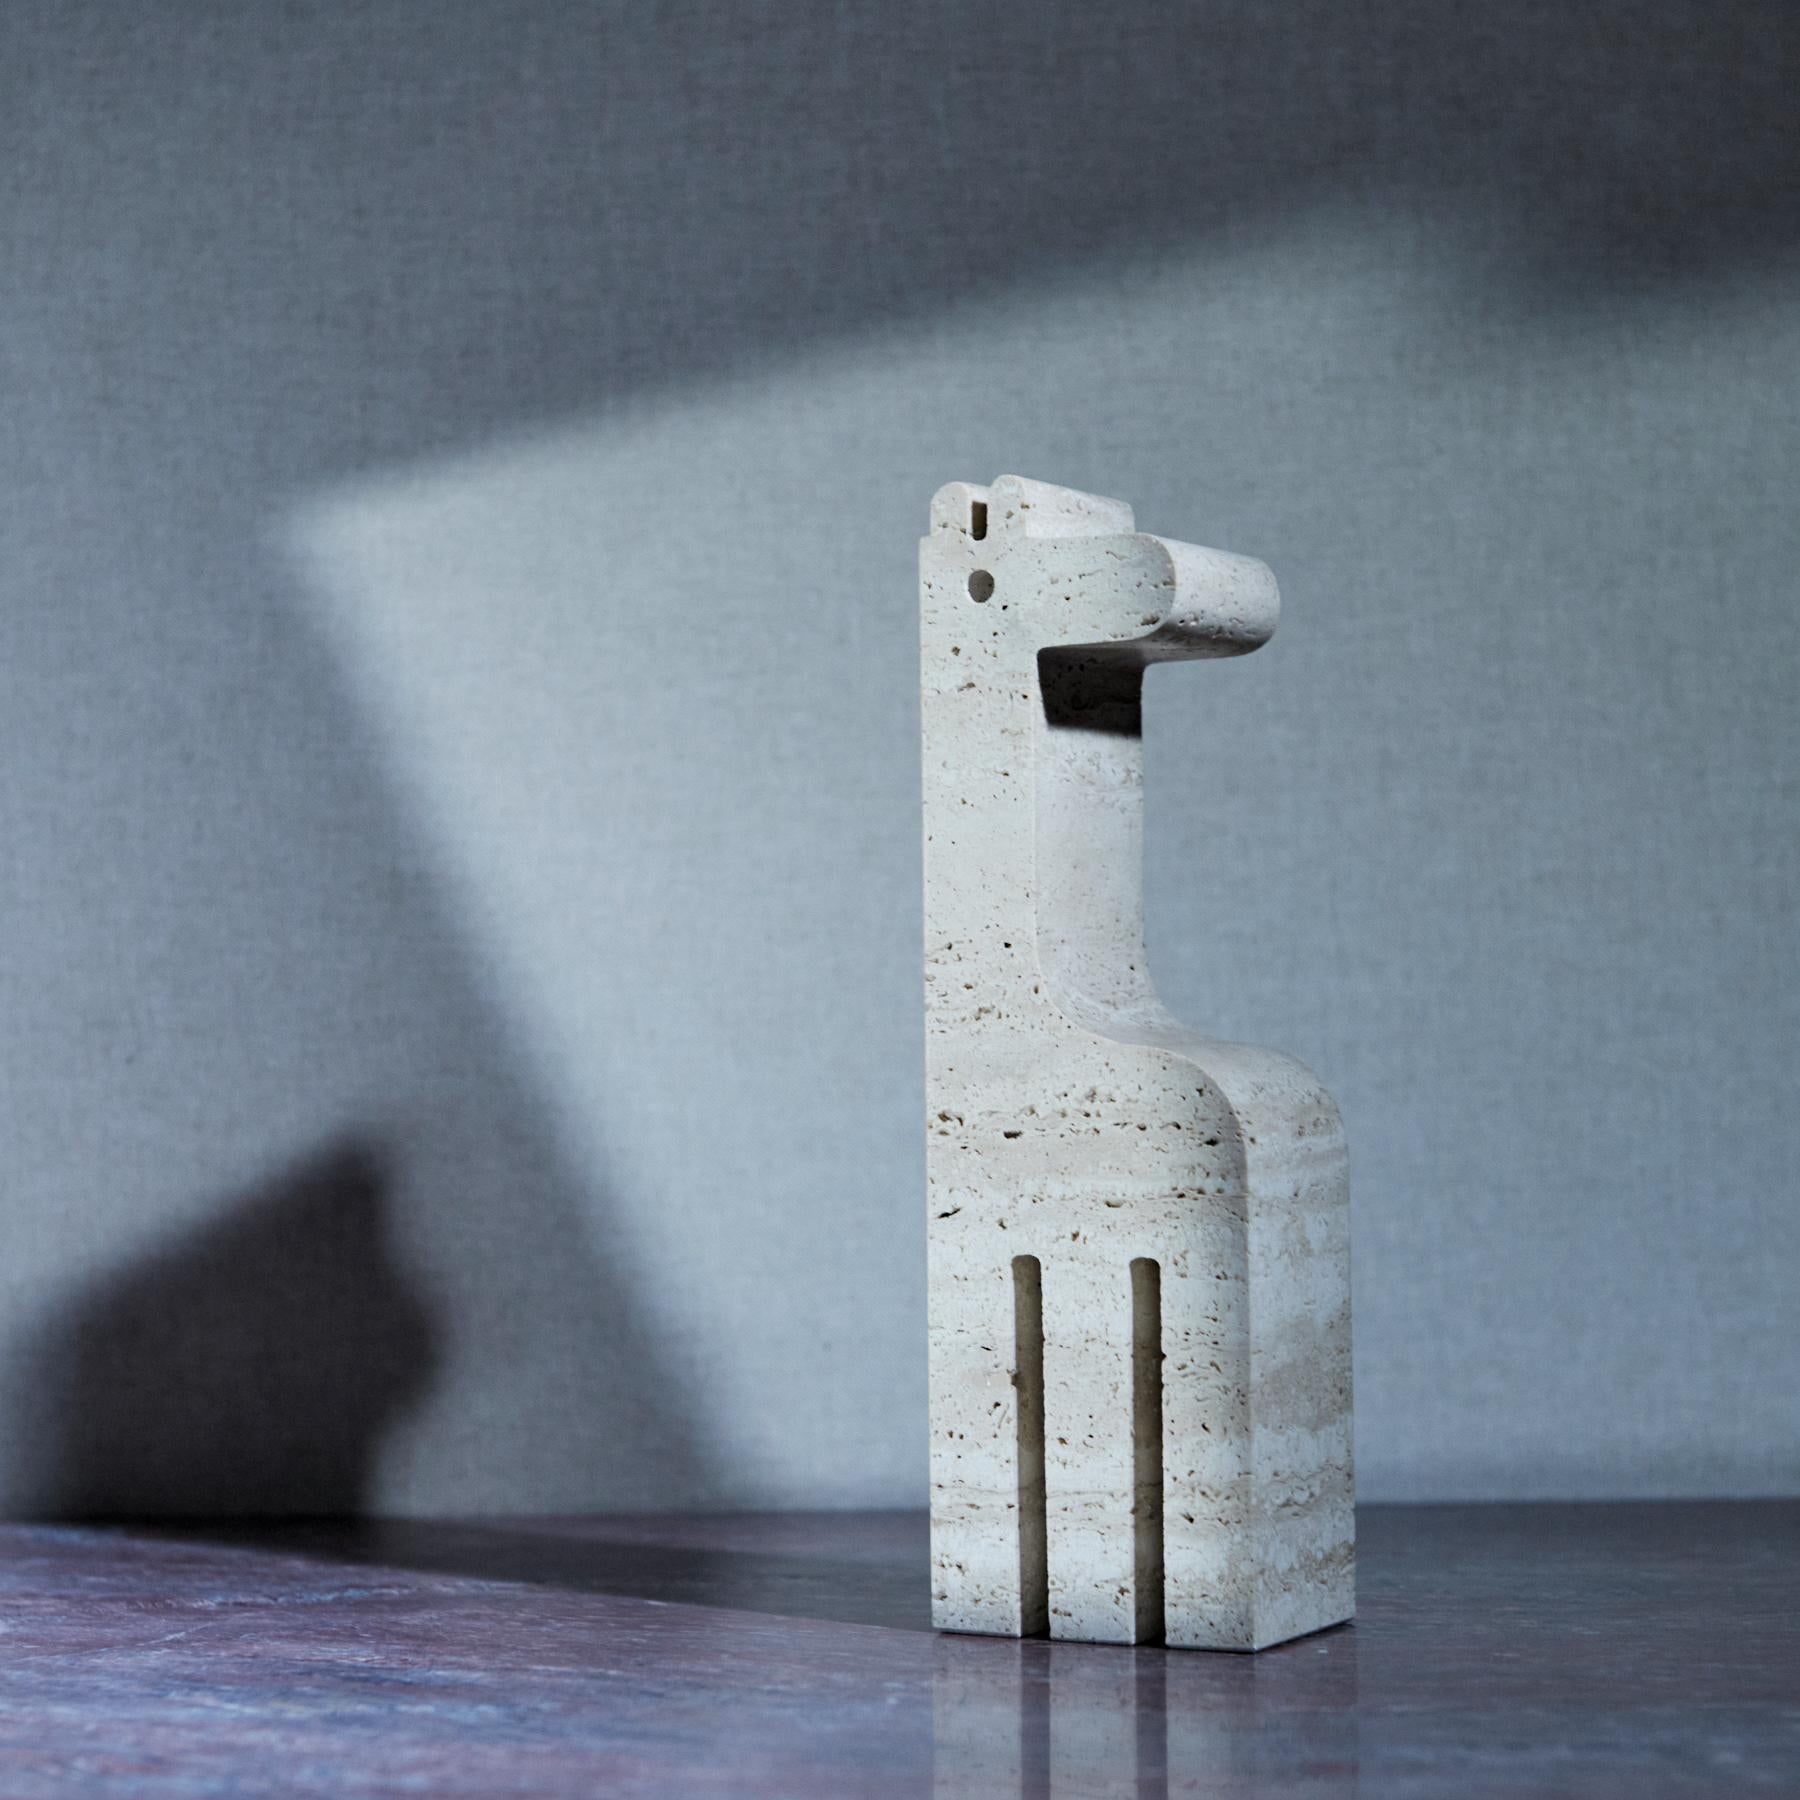 Giraffenskulptur aus echtem Travertin aus Rapolano (Toskana), hergestellt von dem bekannten italienischen Designer Fratelli Mannelli in den 1970er Jahren. 

Neben Figuren von Fratelli Mannelli bieten wir eine Kuration sorgfältig ausgewählter